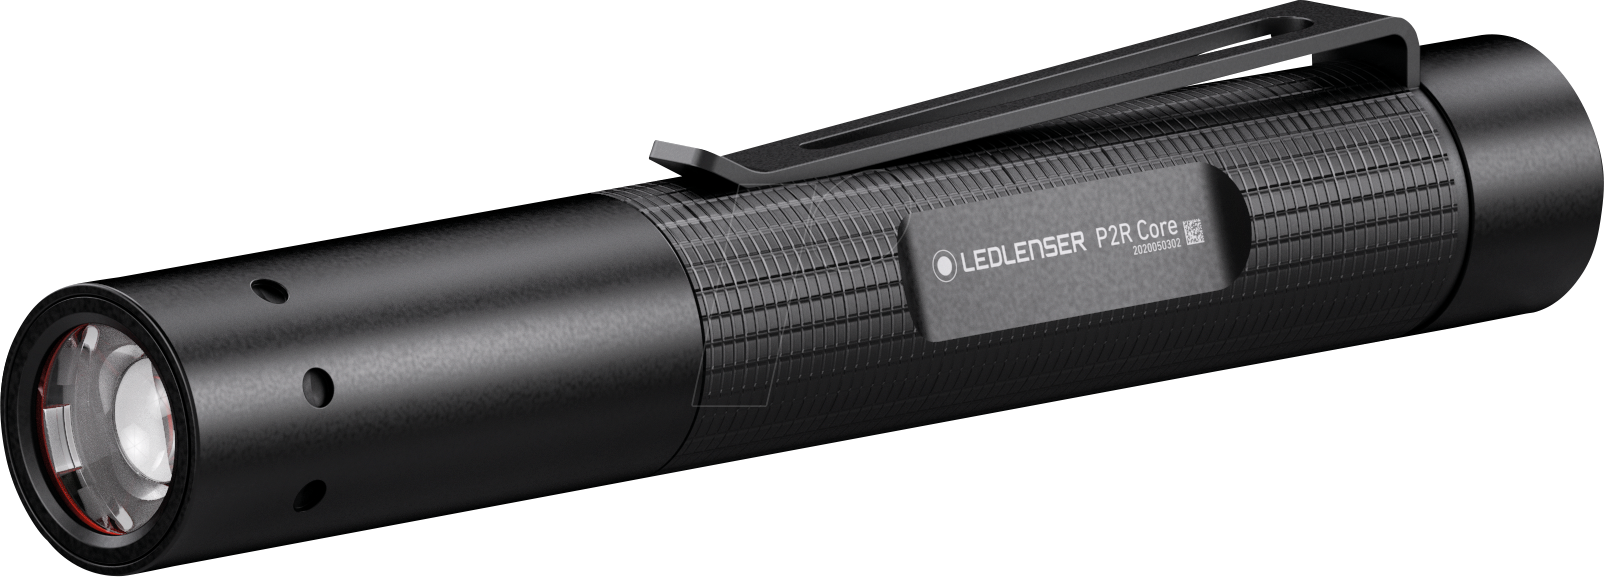 LEDLENSER 502176 - LED-Taschenlampe, P2R Core, 120 lm von LEDLENSER